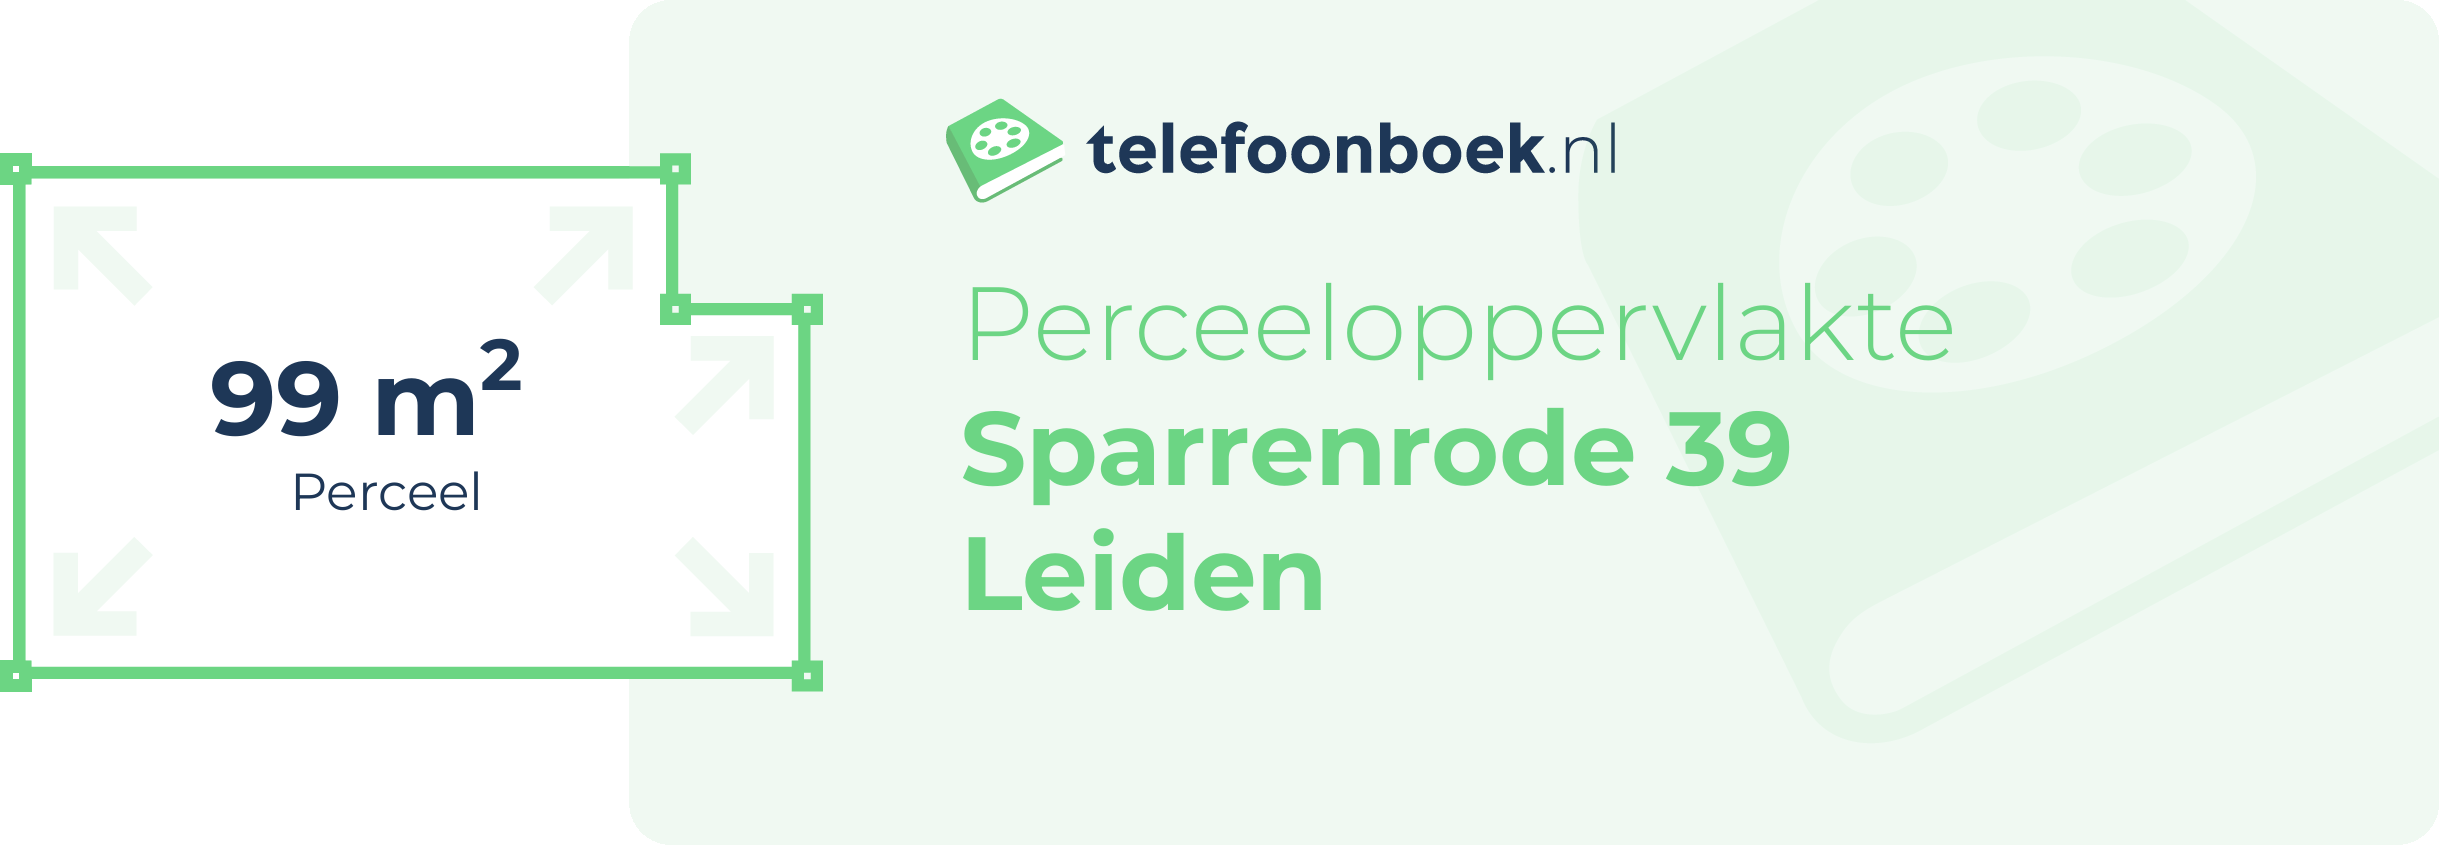 Perceeloppervlakte Sparrenrode 39 Leiden